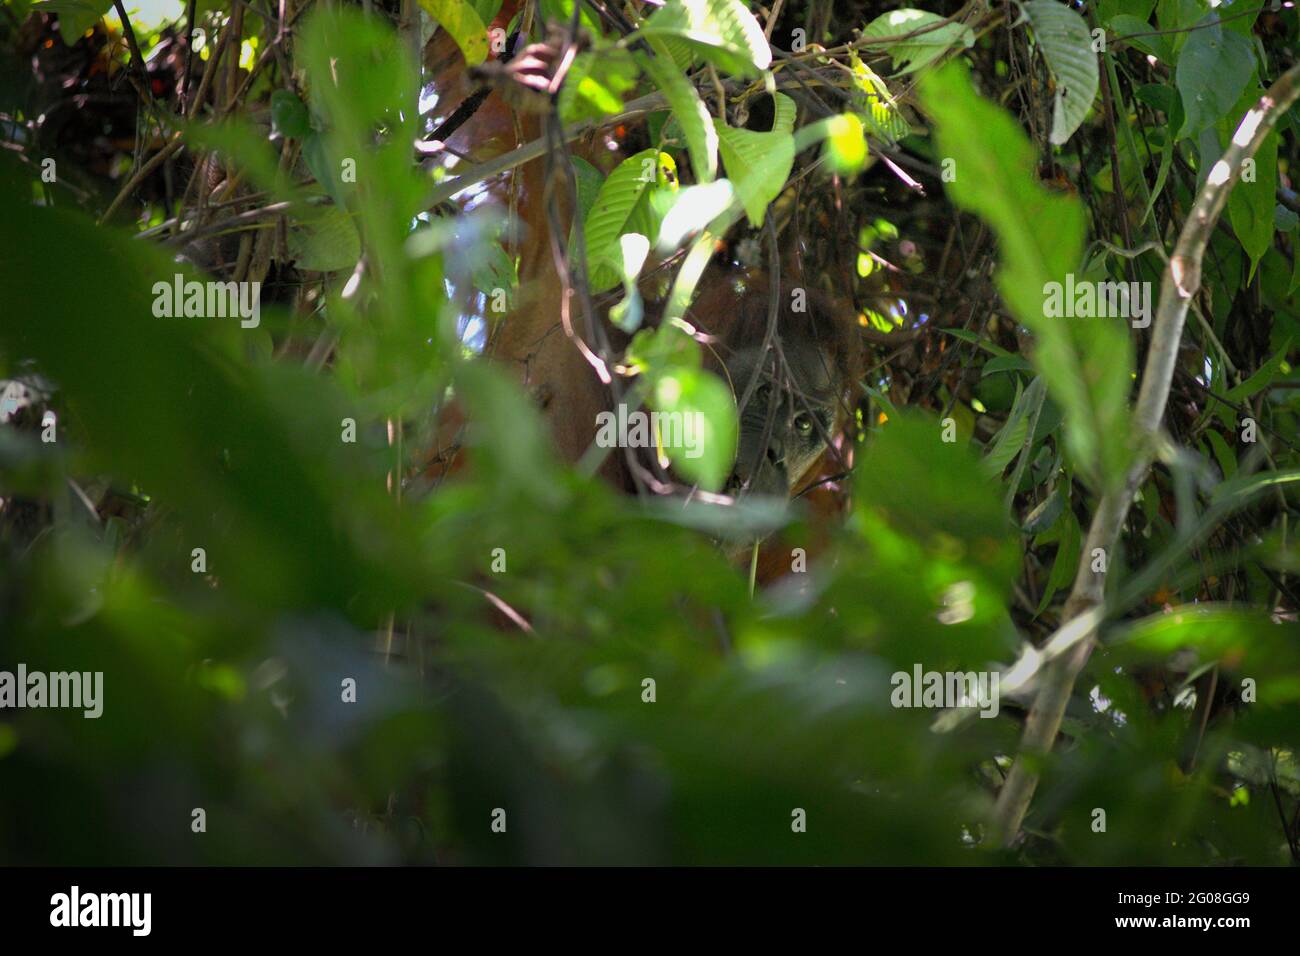 Wilder Orang-Utan starrt durch die Blätter, während er im Kutai-Nationalpark, Ost-Kalimantan, Indonesien, auf Baum-Nahrungssuche geht. Unterart Bornean orangutan (Pongo pygmaeus morio) im Nordosten. Abgesehen von Entwaldung und Wilderei bringt der Klimawandel mehr Aussterberisiko für diese endemische, vom Aussterben bedrohte Art mit sich. Höhere Temperaturen, ungewöhnliche und extreme Klimabedingungen, zum Beispiel, werden die Verfügbarkeit ihrer Lebensmittel beeinflussen. Stockfoto